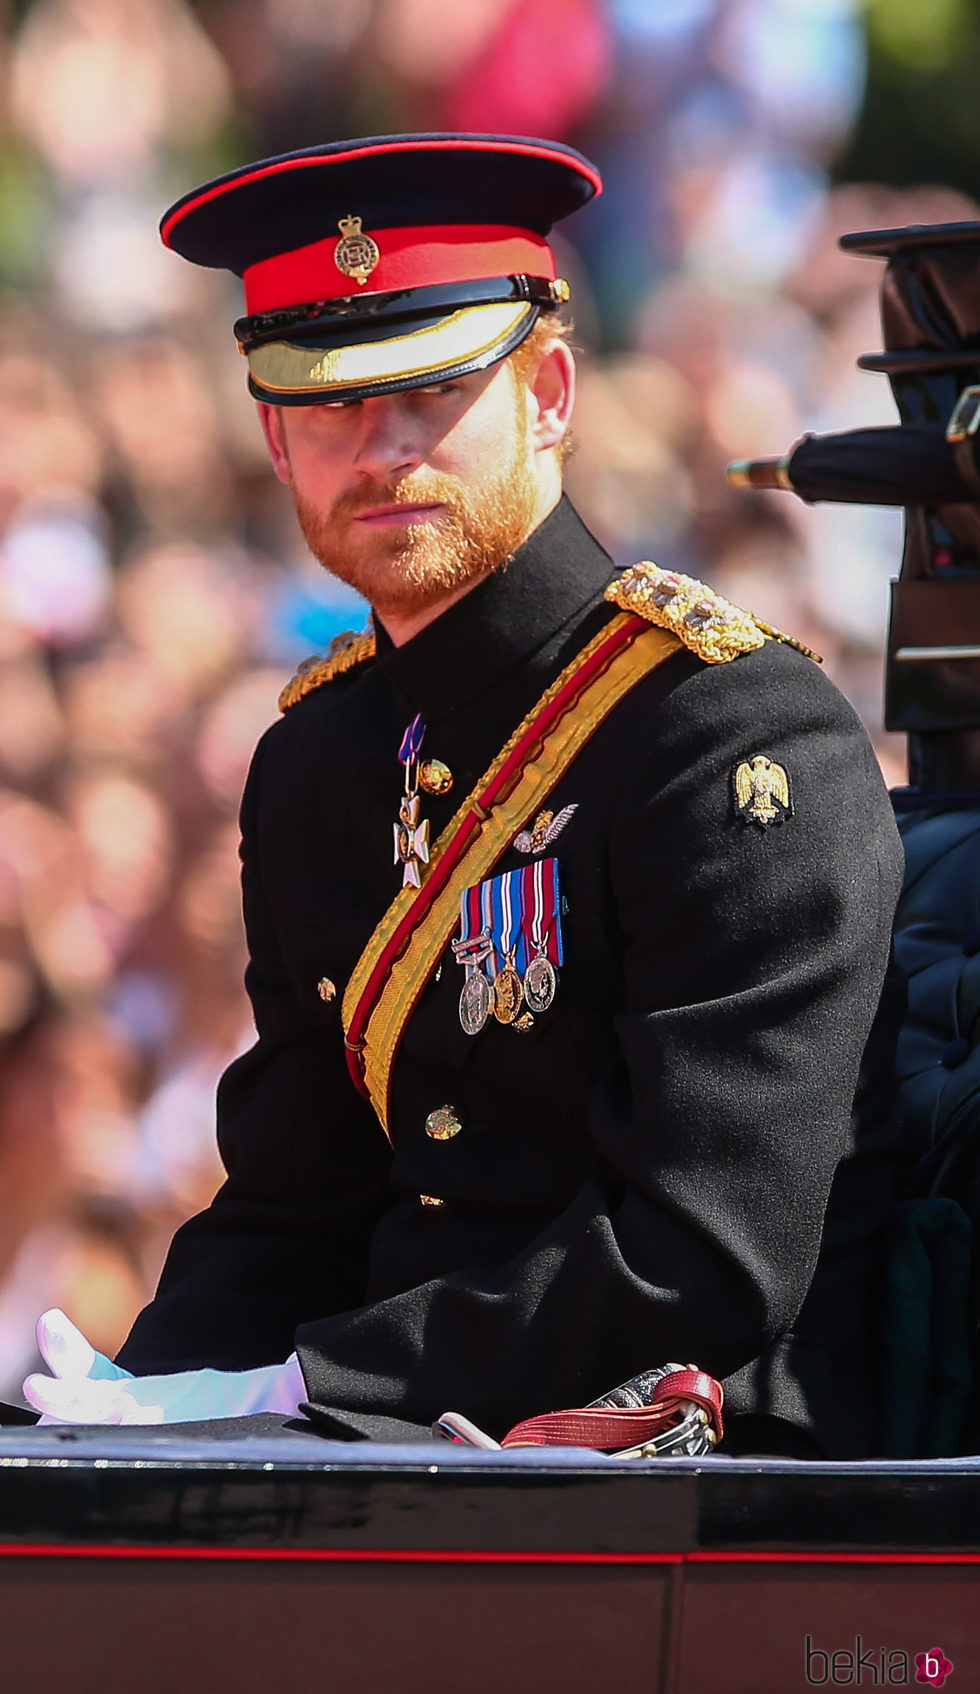 El Príncipe Harry en la tradicional Trooping The Colour